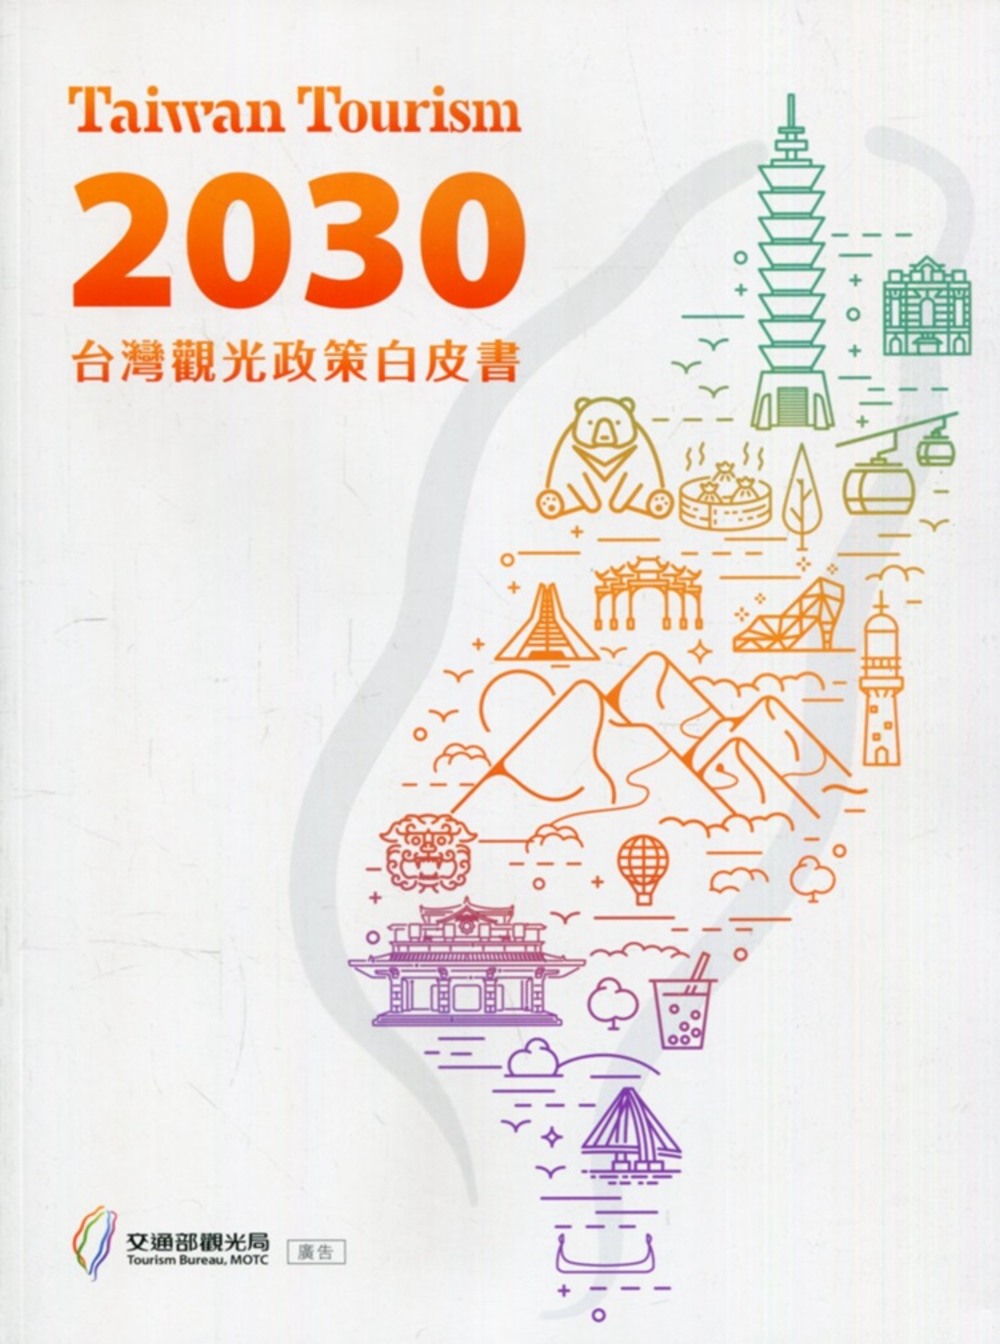 Taiwan Tourism 2030 台灣觀光政策白皮書